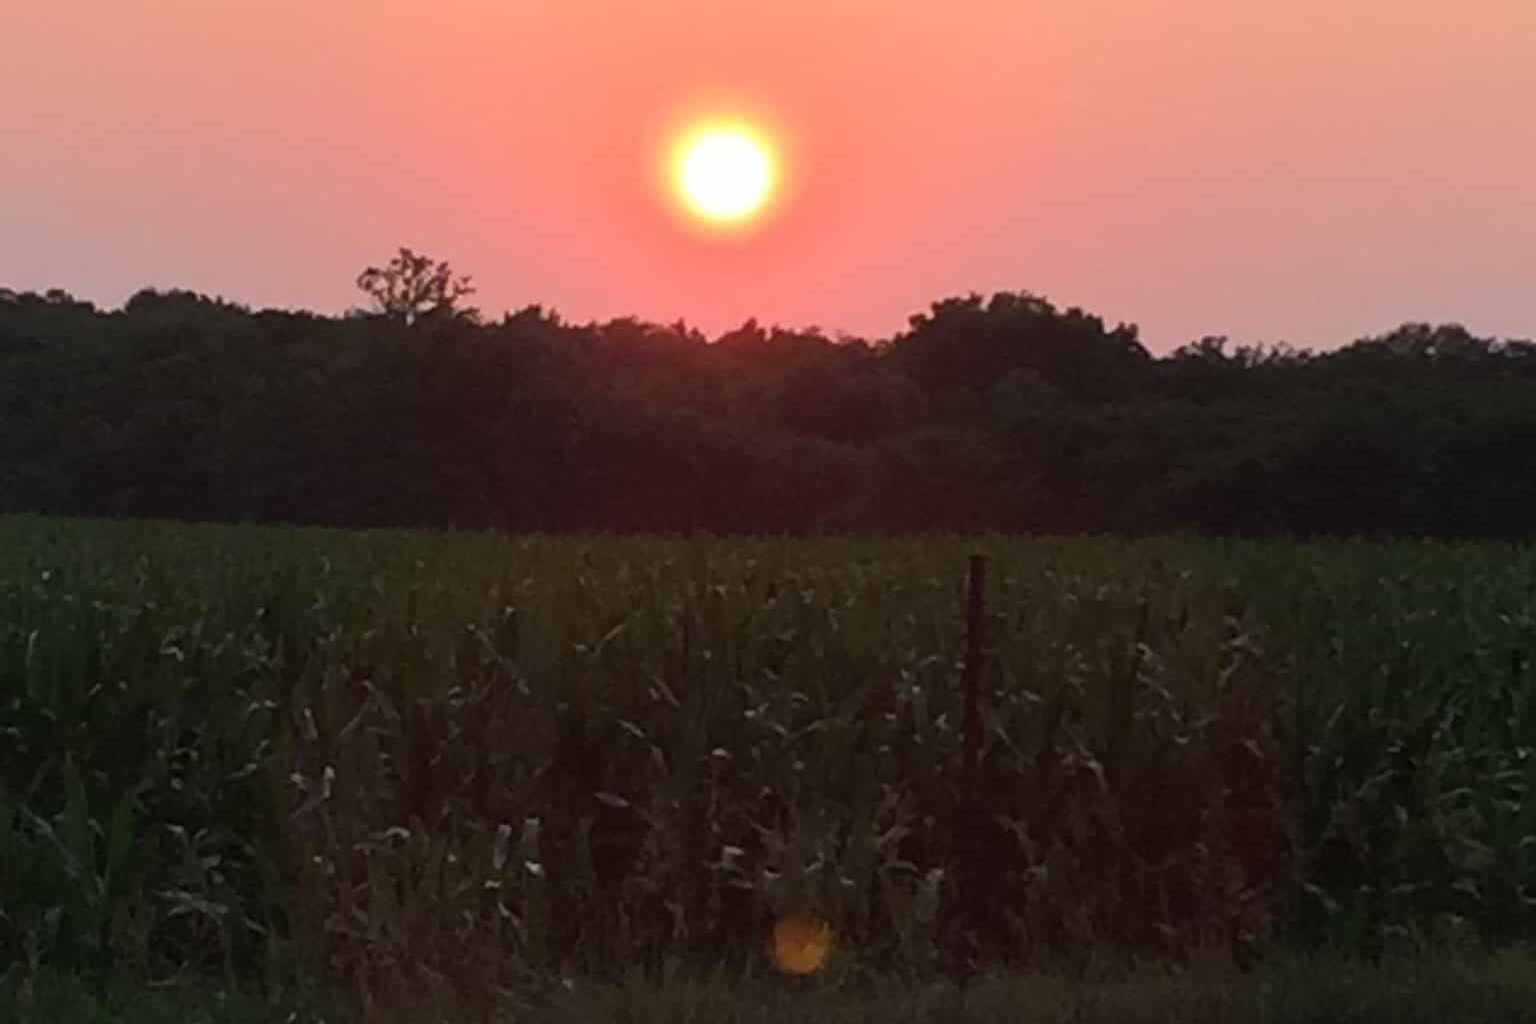 Sunset in Wabash, Indiana